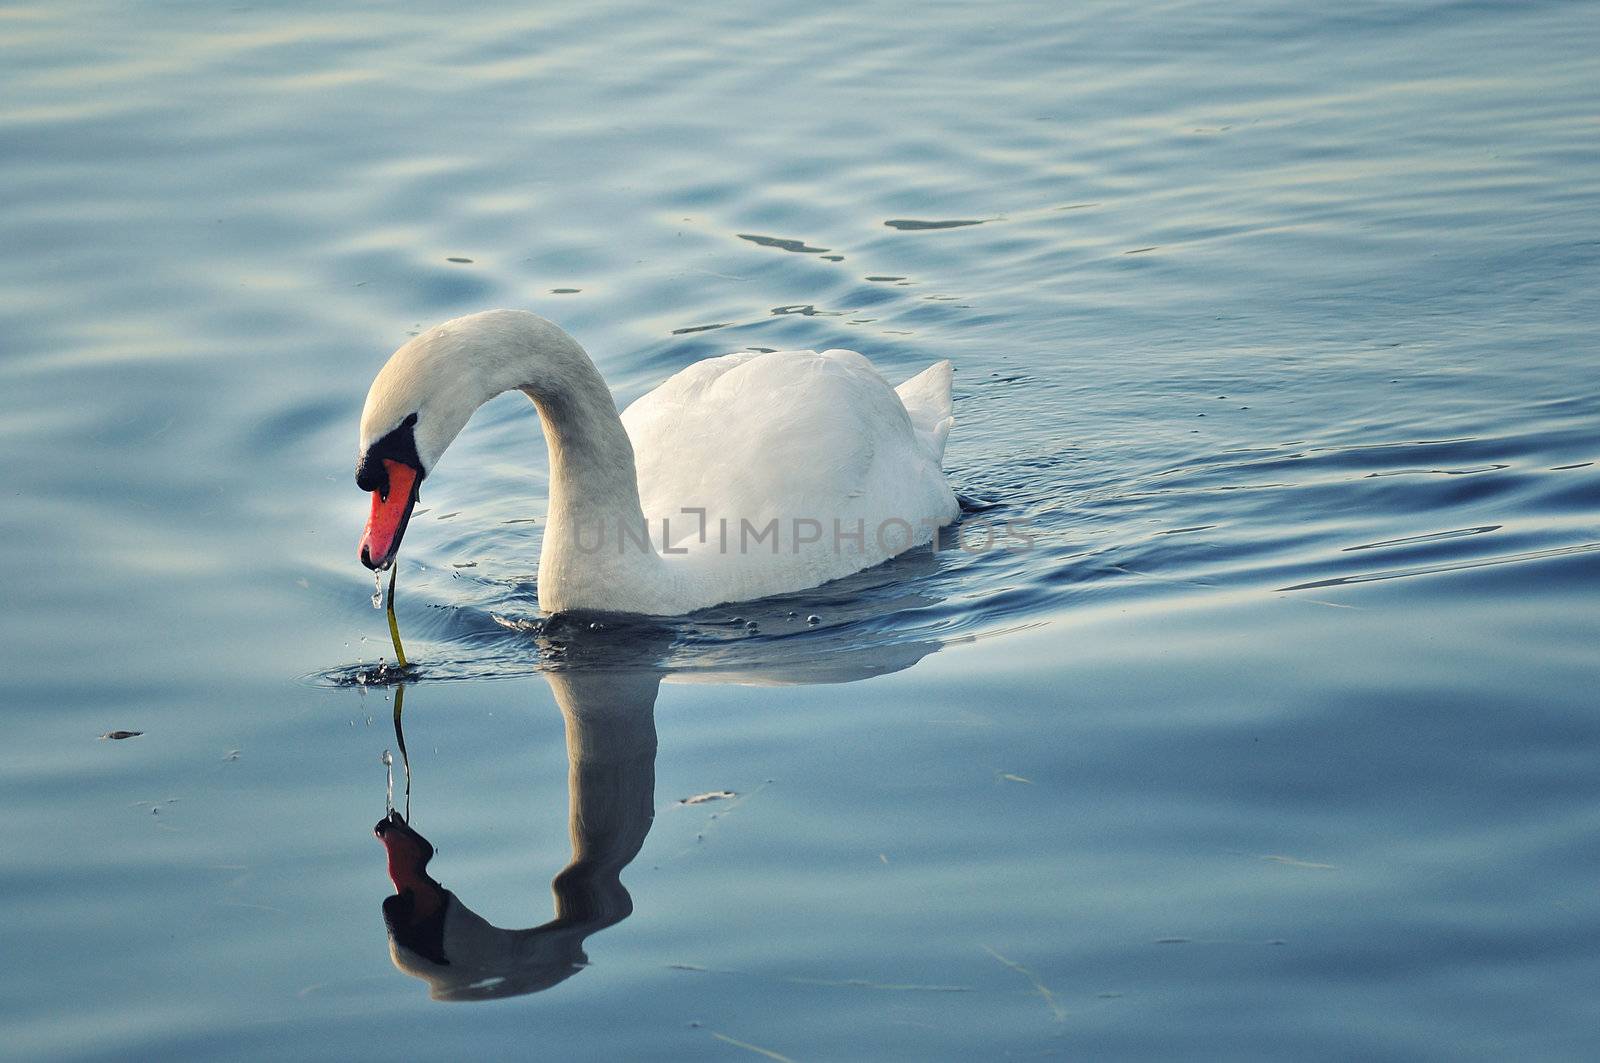 teh swan by sognolucido